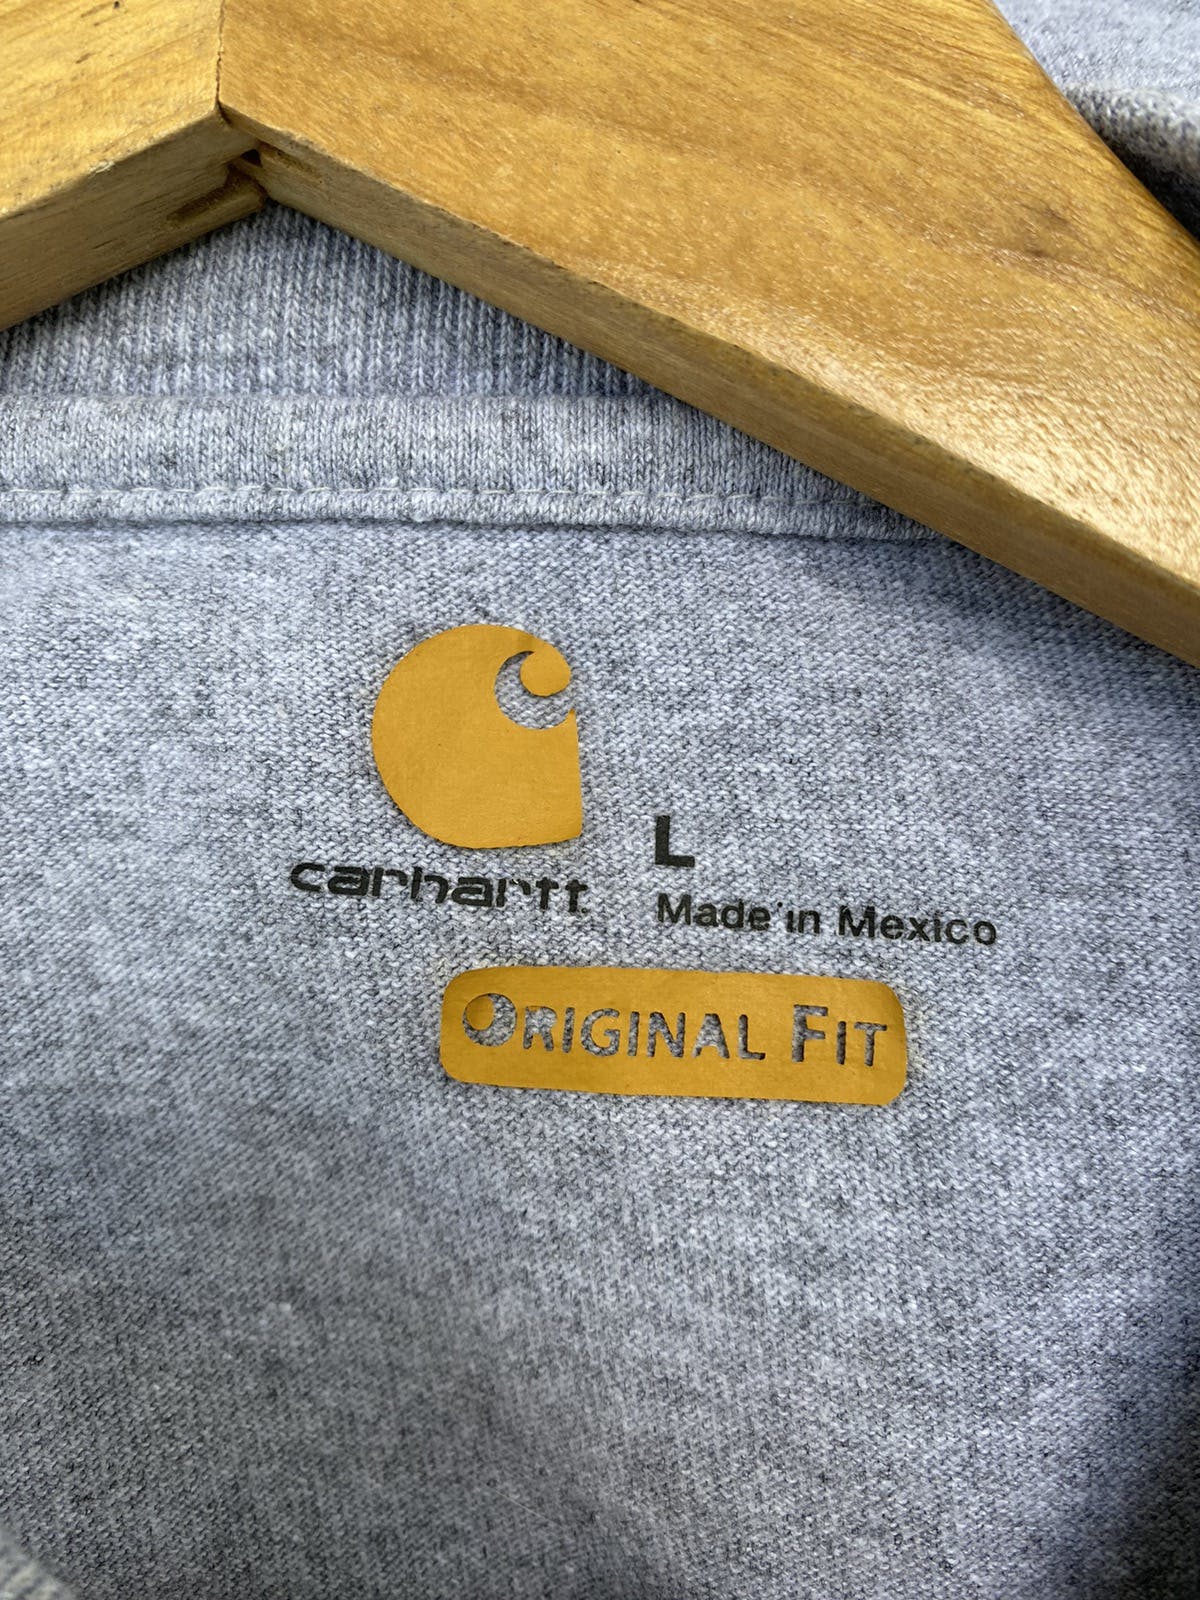 Carhartt Mechanical Service I.n.c Shirt Button - 5